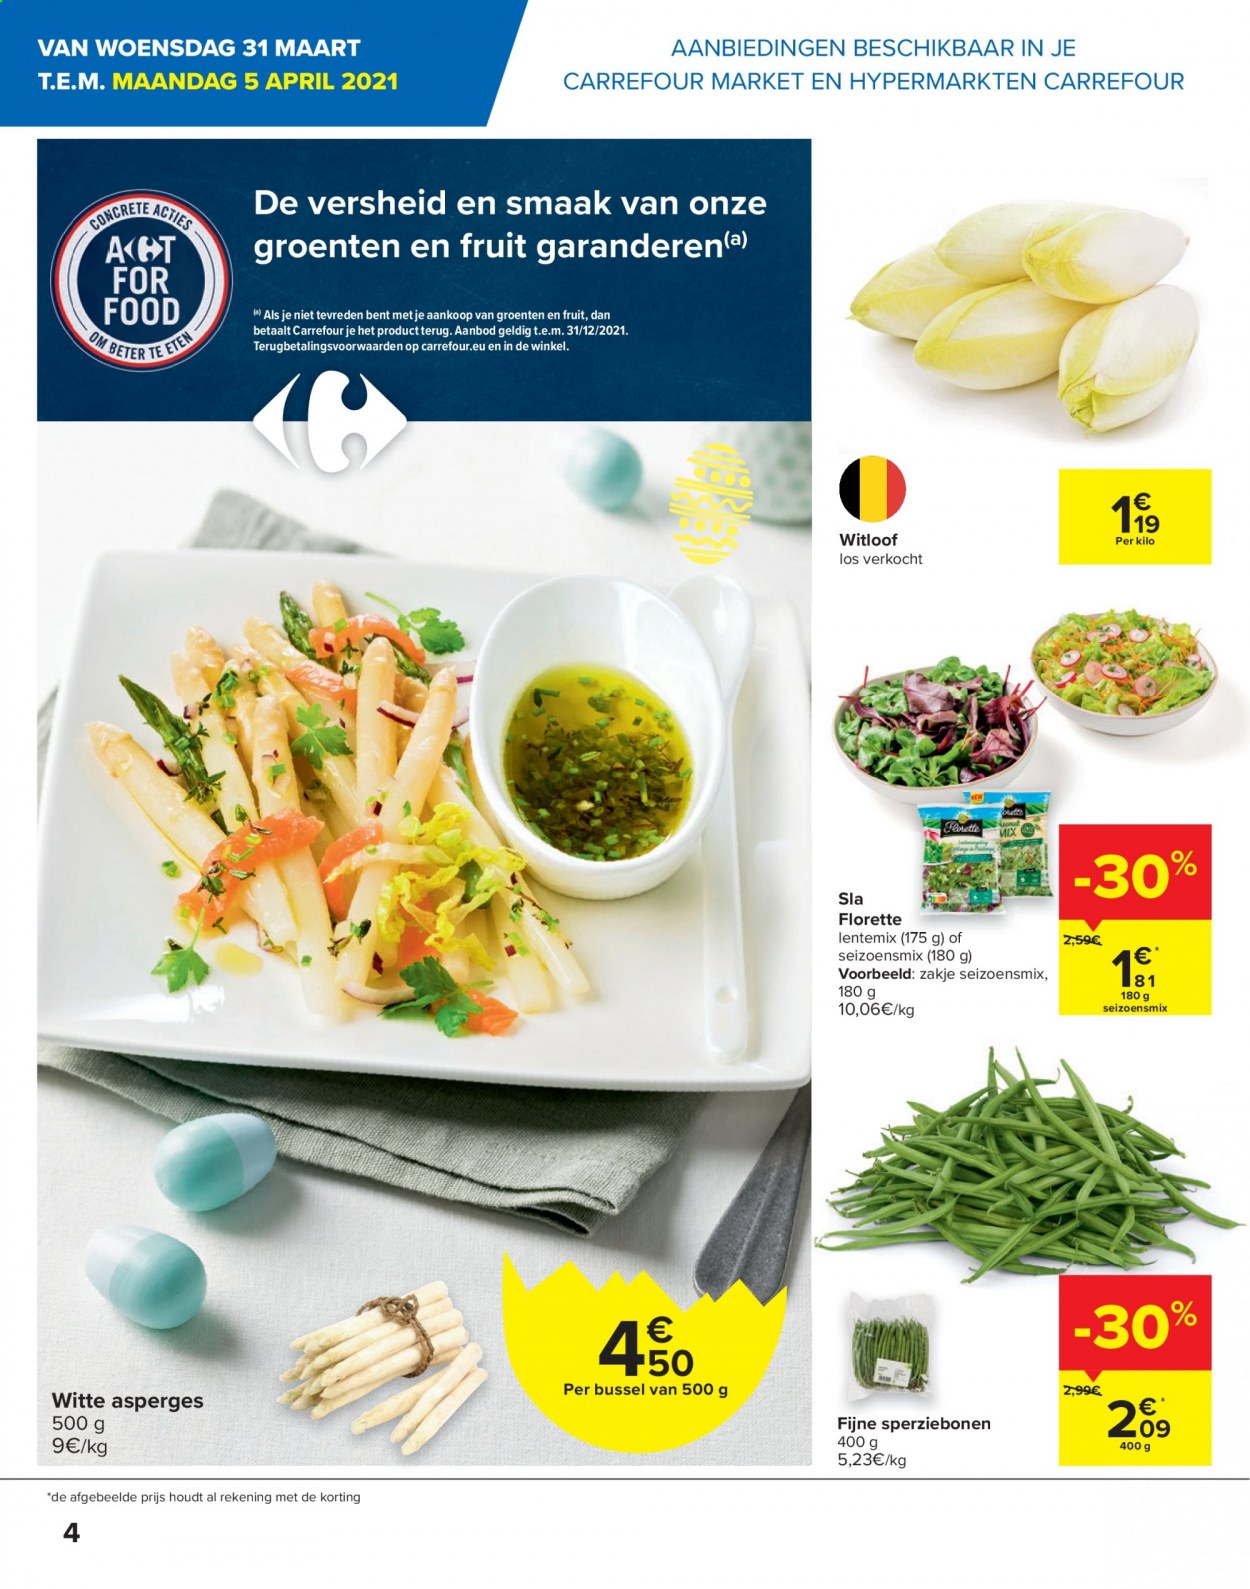 thumbnail - Carrefour-aanbieding - 31/03/2021 - 12/04/2021 -  producten in de aanbieding - asperges, sla, sperziebonen, witte asperges. Pagina 4.